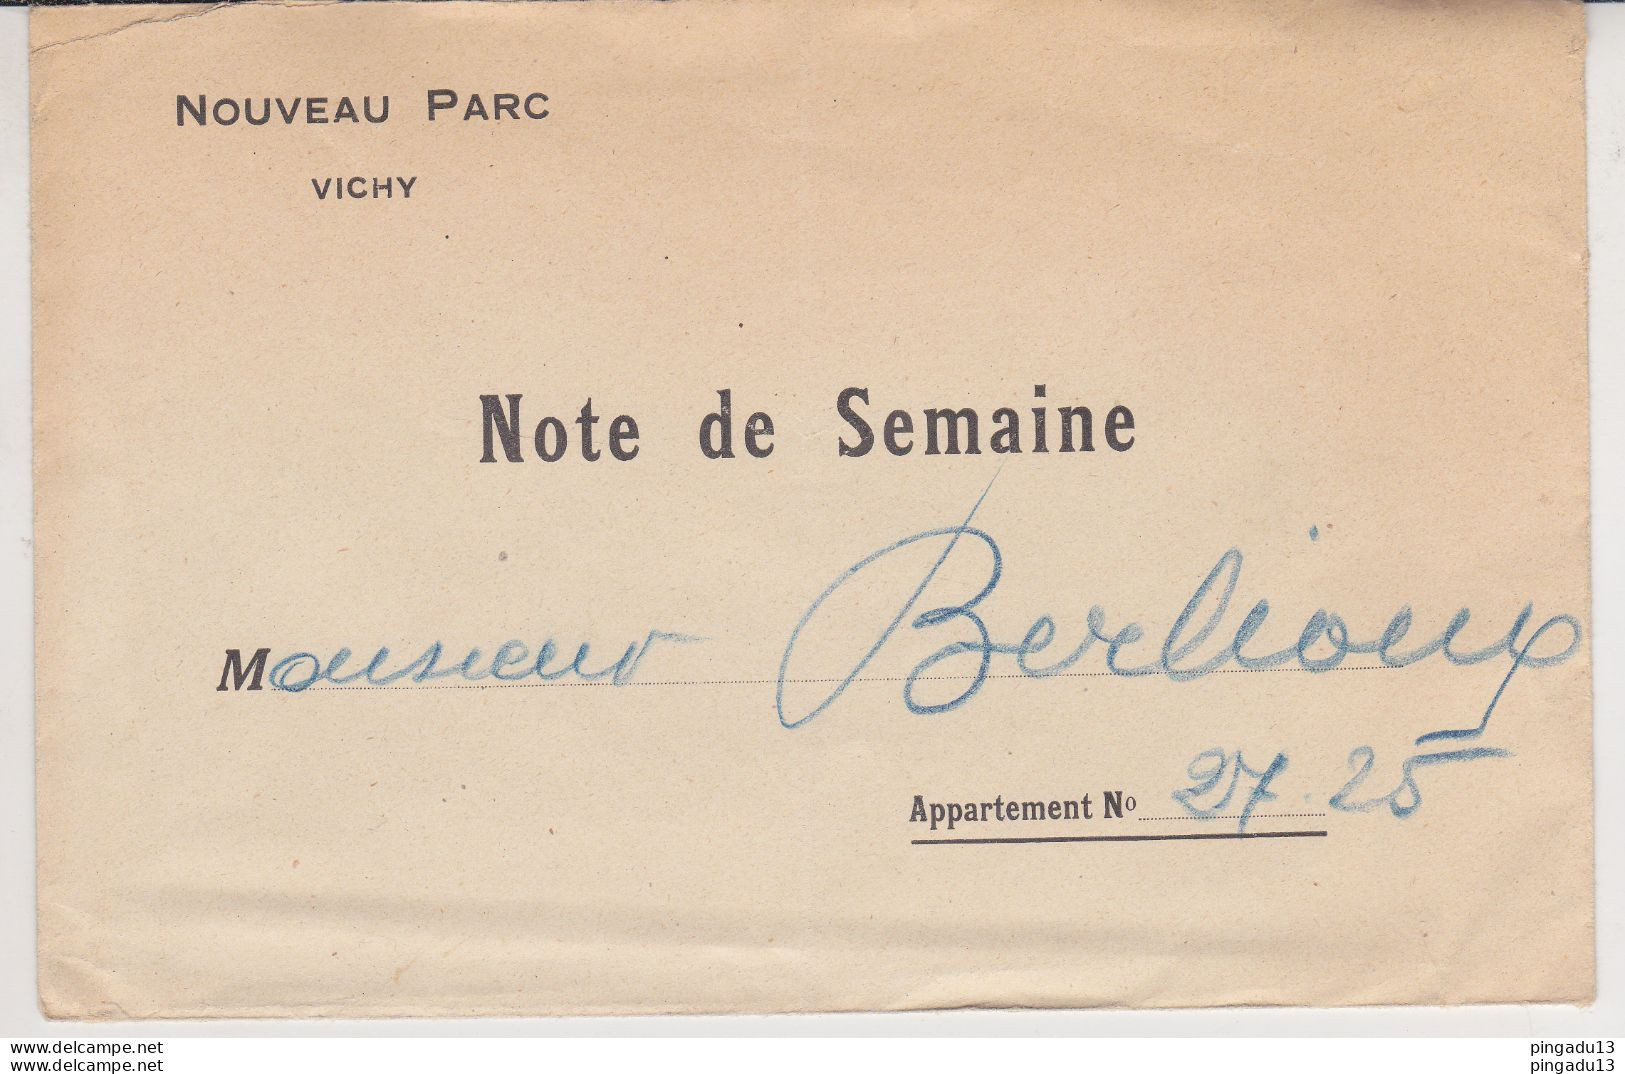 Fixe Vichy Allier Hôtel Nouveau Parc Séjour de M B... en Juillet 1930 timbre fiscal très bel ensemble